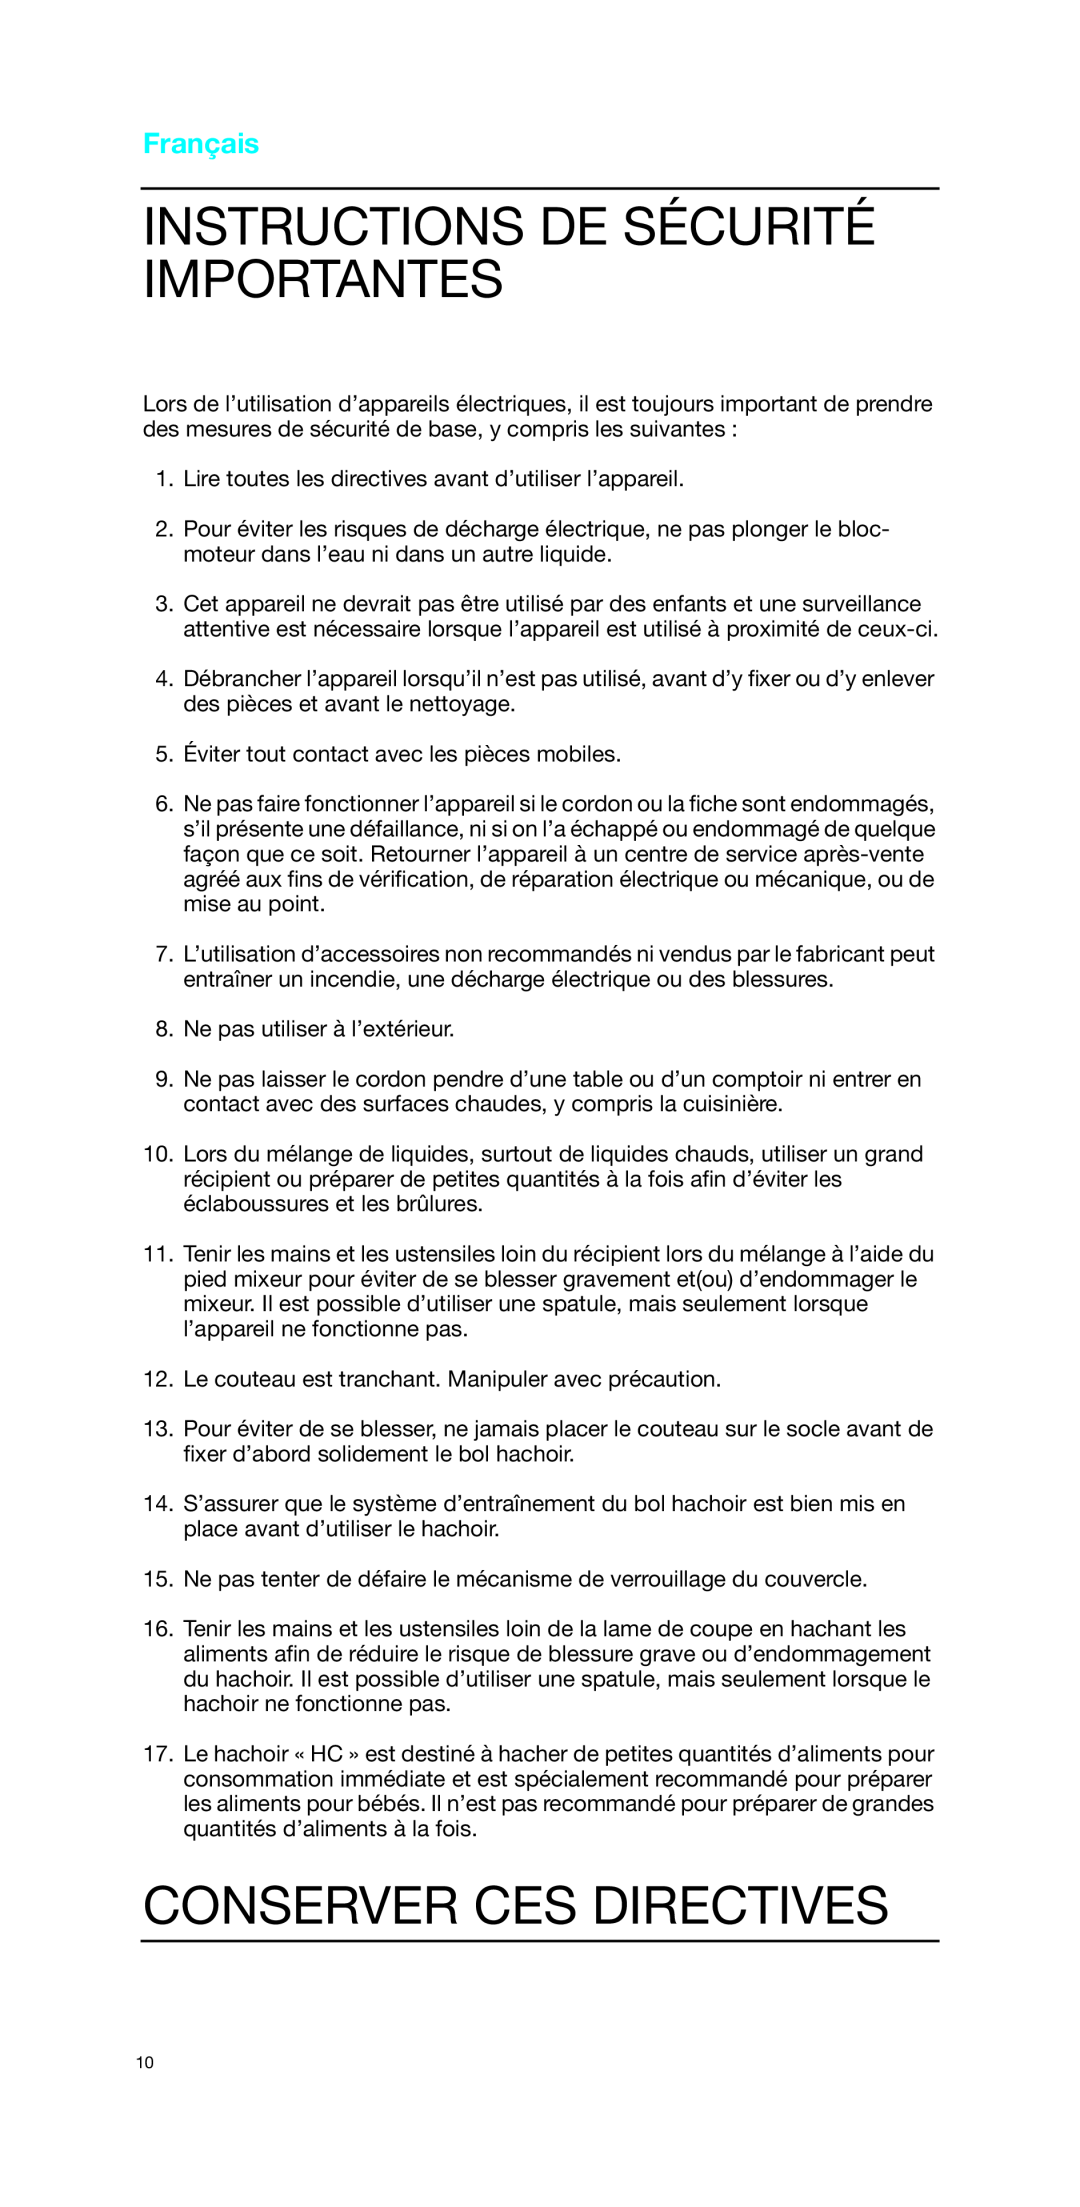 Braun MR 4050 MCA manual Instructions De Sécurité Importantes, Conserver Ces Directives, Français 